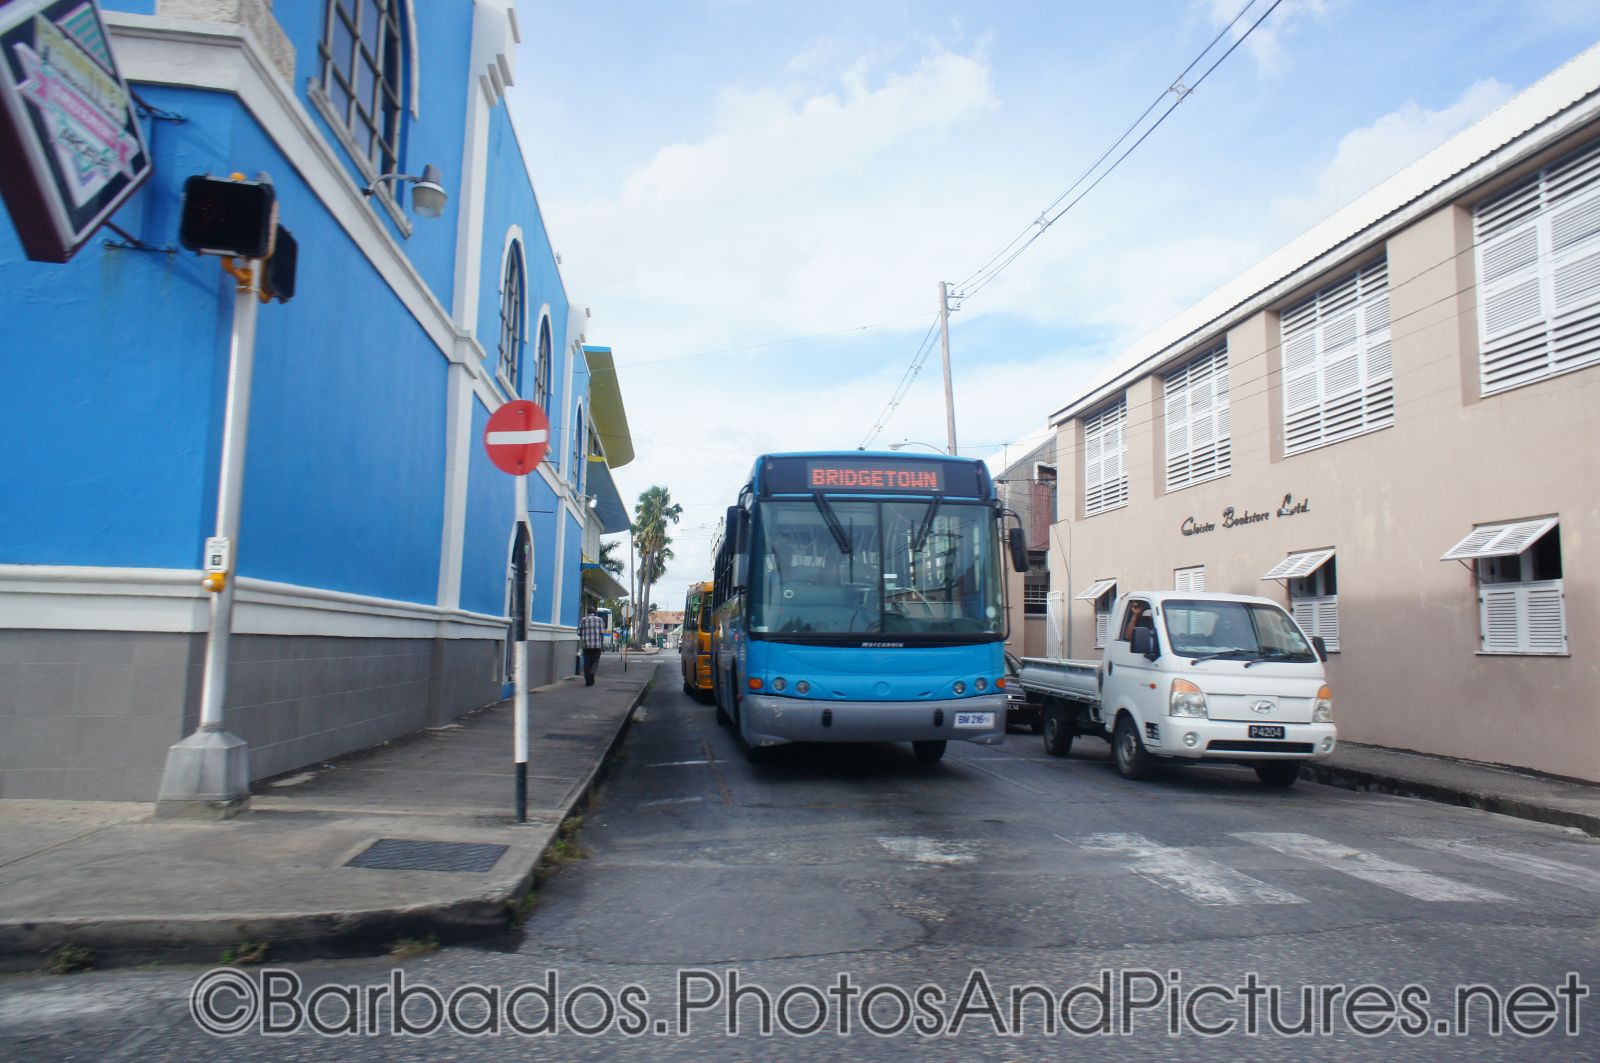 Public bus in Bridgetown Barbados.jpg
